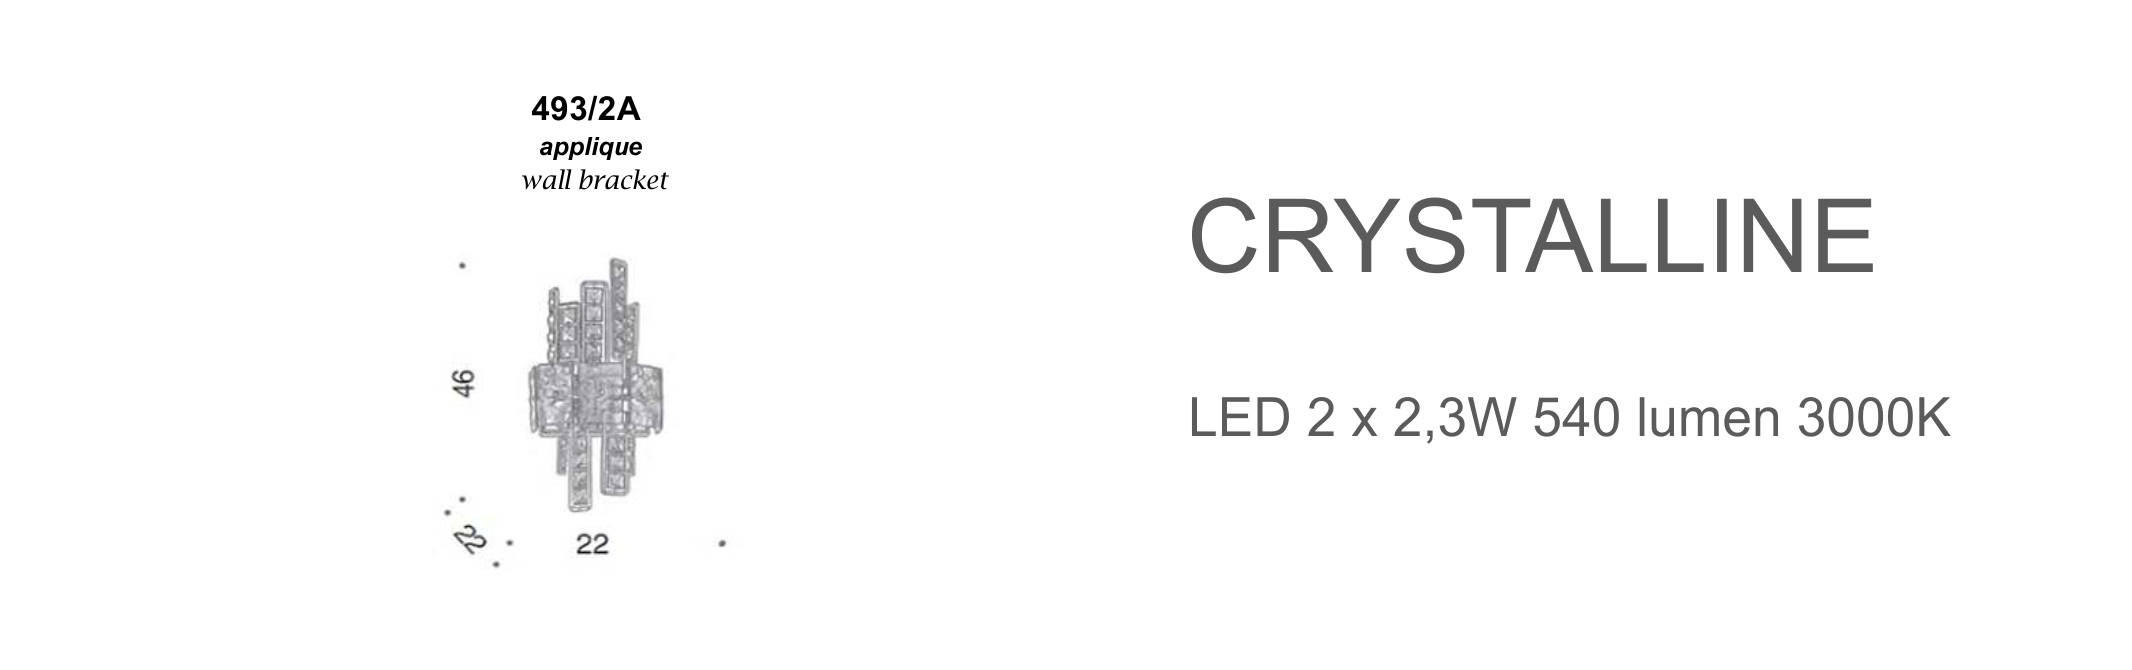 Crystalline 493/2A